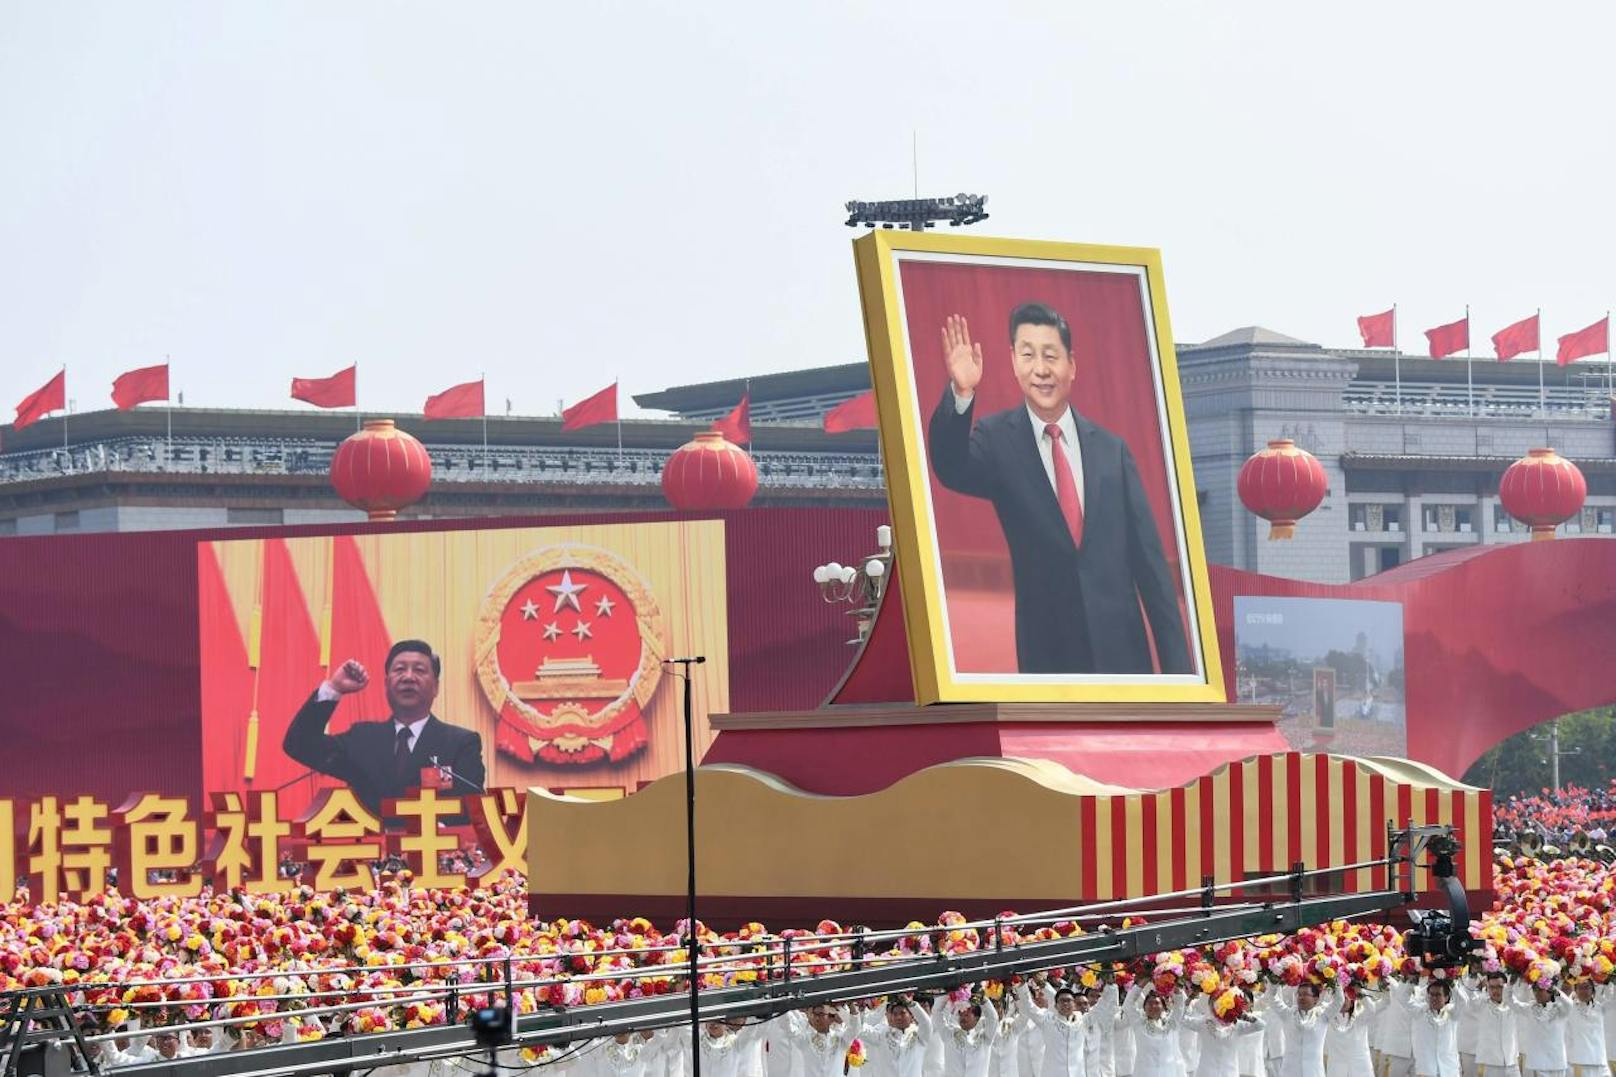 Xi Jinping, der nach einer Verfassungsänderung auf Lebenszeit im Amt bleiben kann, wurde am Nationalfeiertag als unangefochtener Führer des Milliardenvolkes gefeiert.